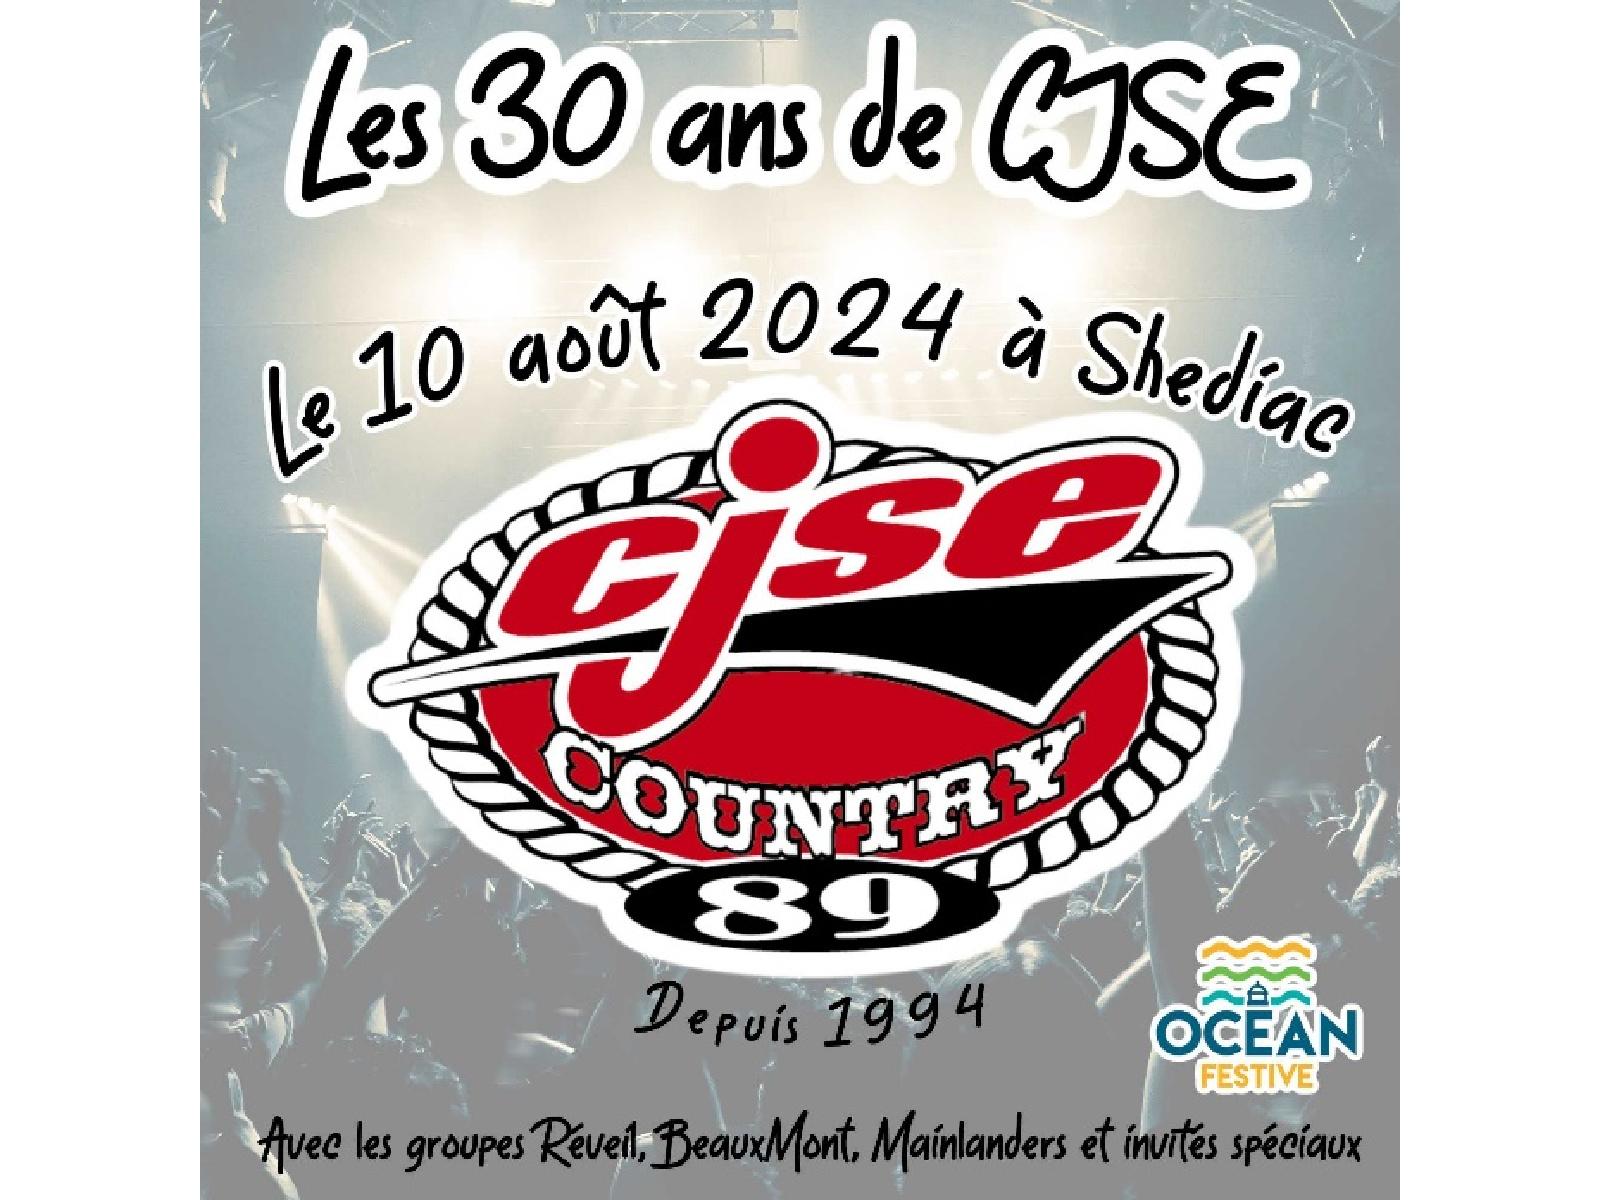 Les trente ans de la radio CJSE seront célébrés en grand le 10 août à Shediac